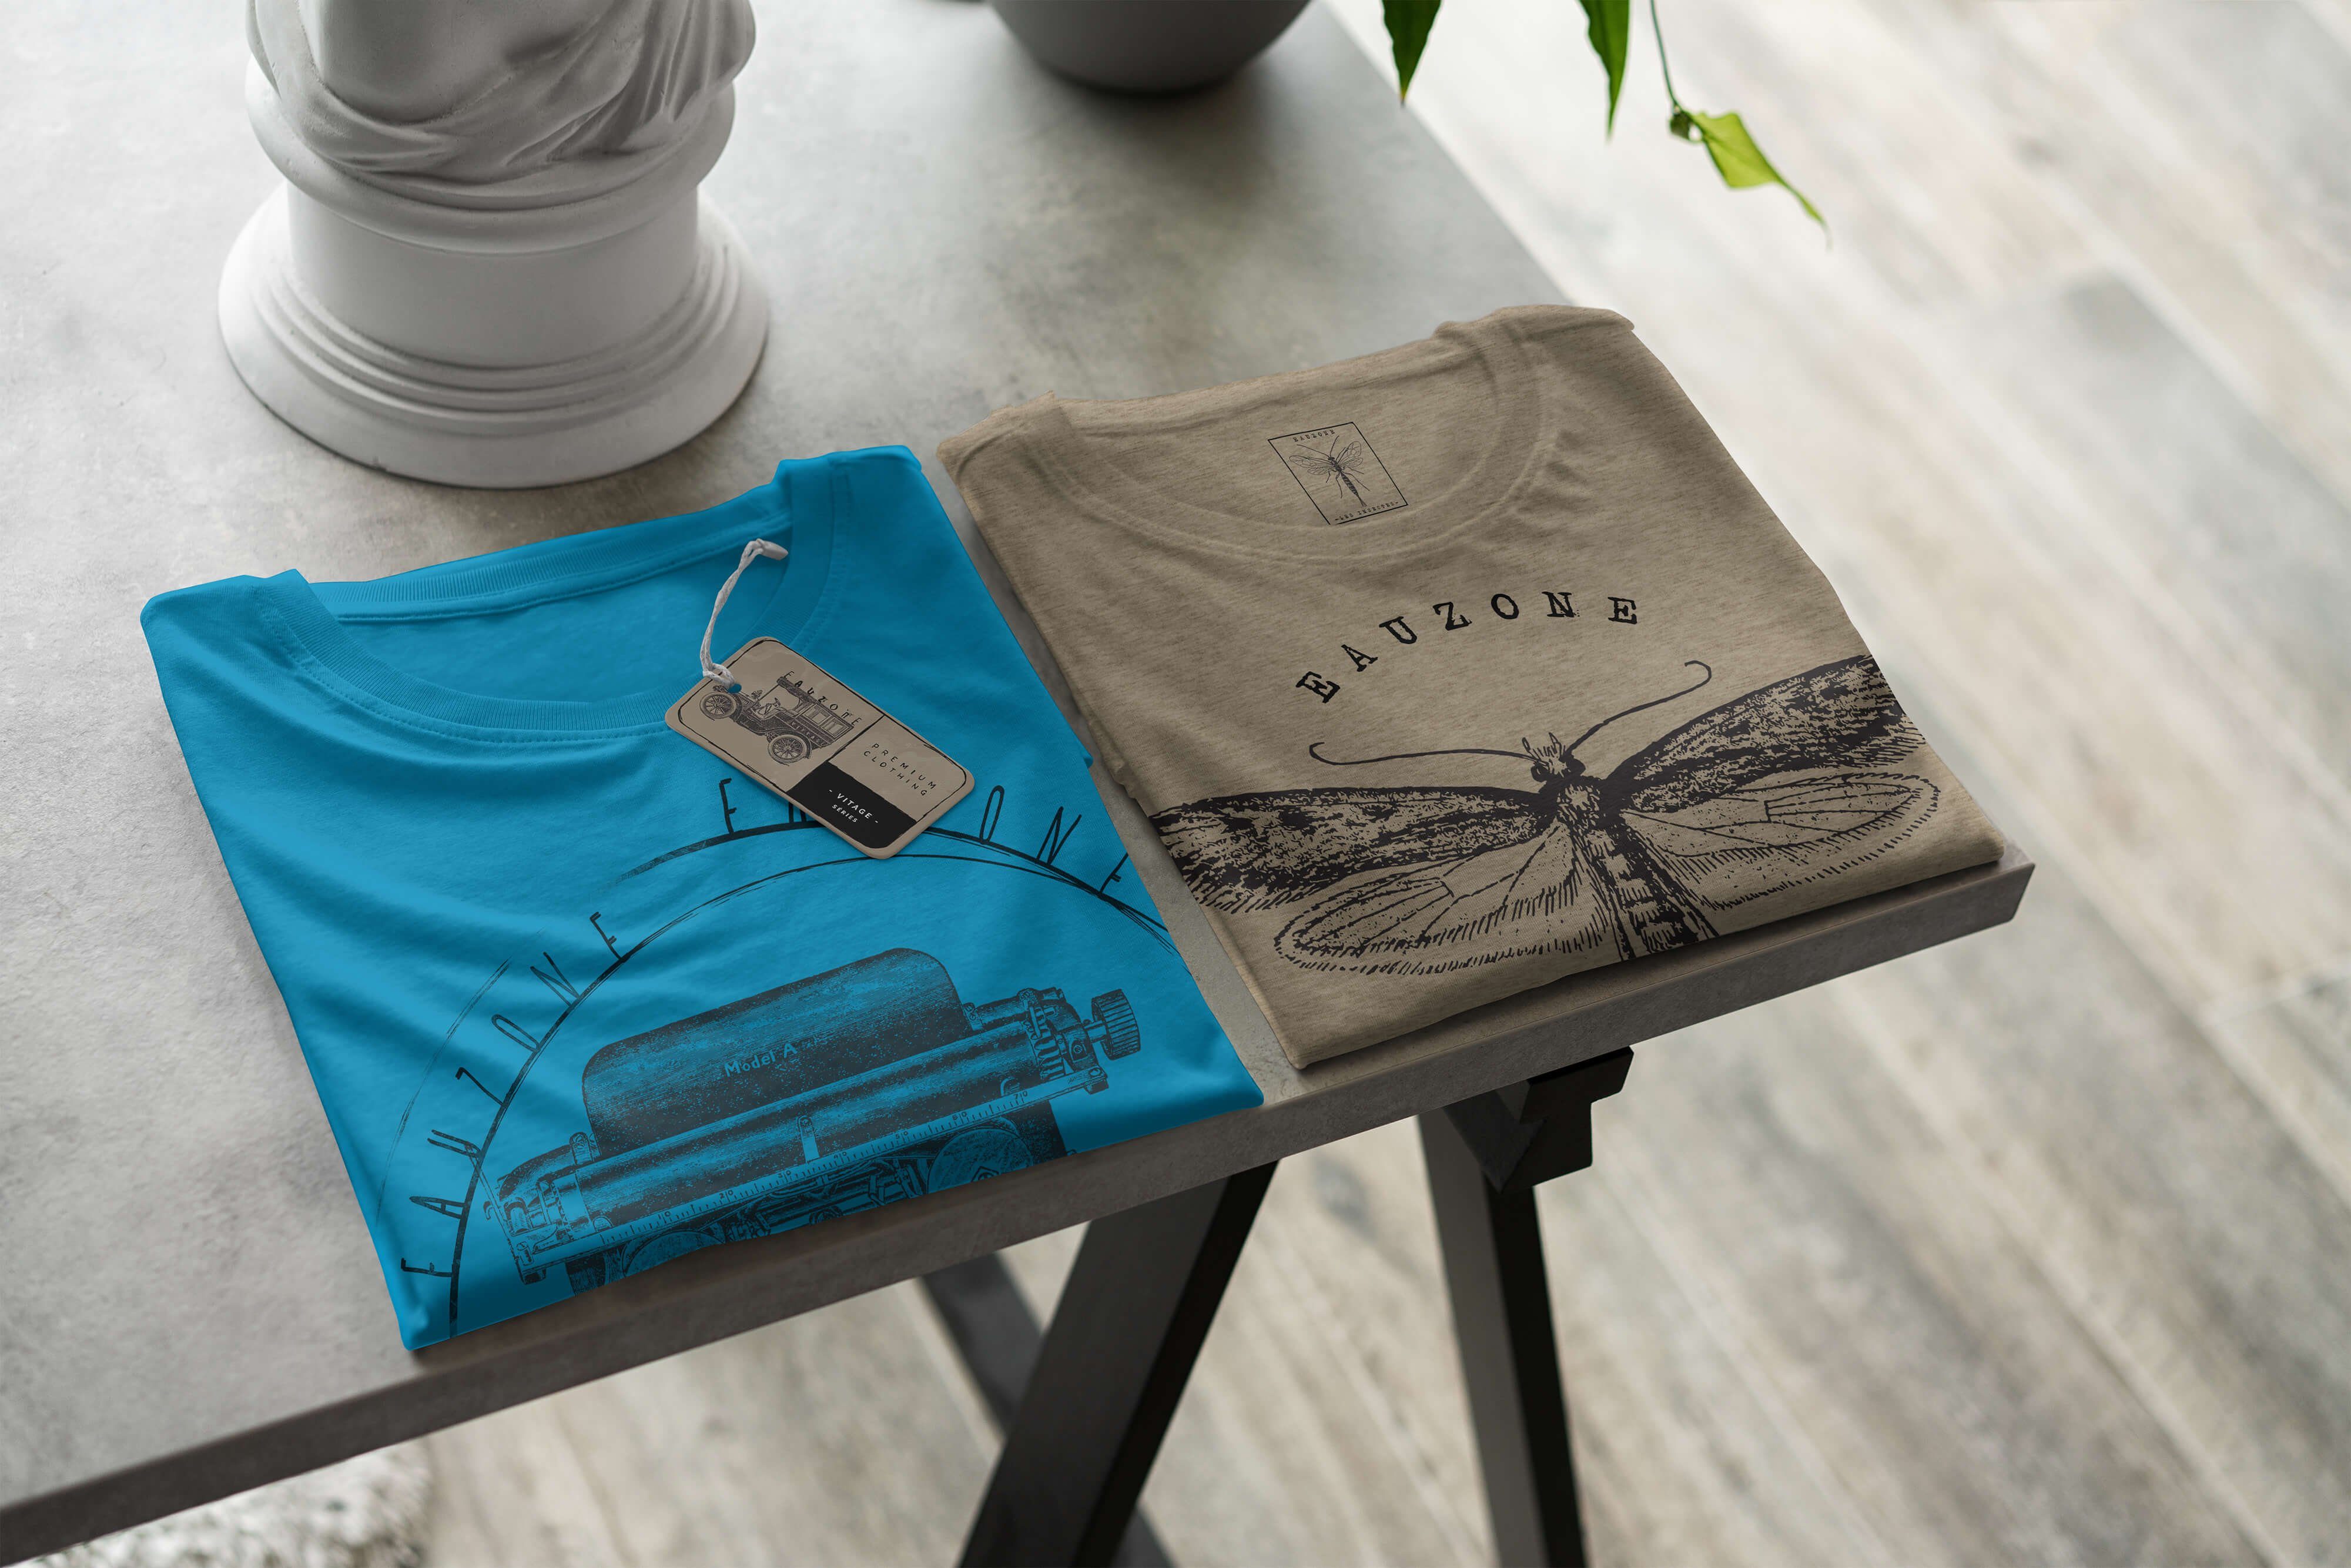 Sinus Herren T-Shirt Schreibmaschine Art Atoll Vintage T-Shirt